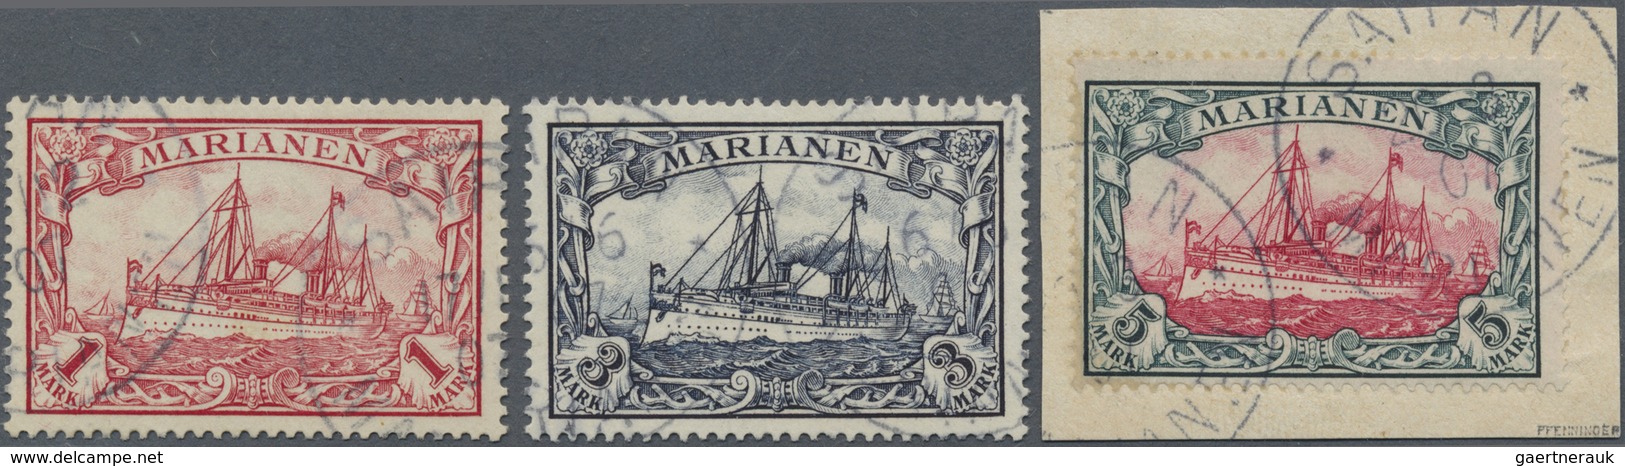 Brfst/O Deutsche Kolonien - Marianen: 1901. Schiffstype 5 Mark Auf Briefstück, Signiert Pfenninger, Dazu 3 M - Marianen